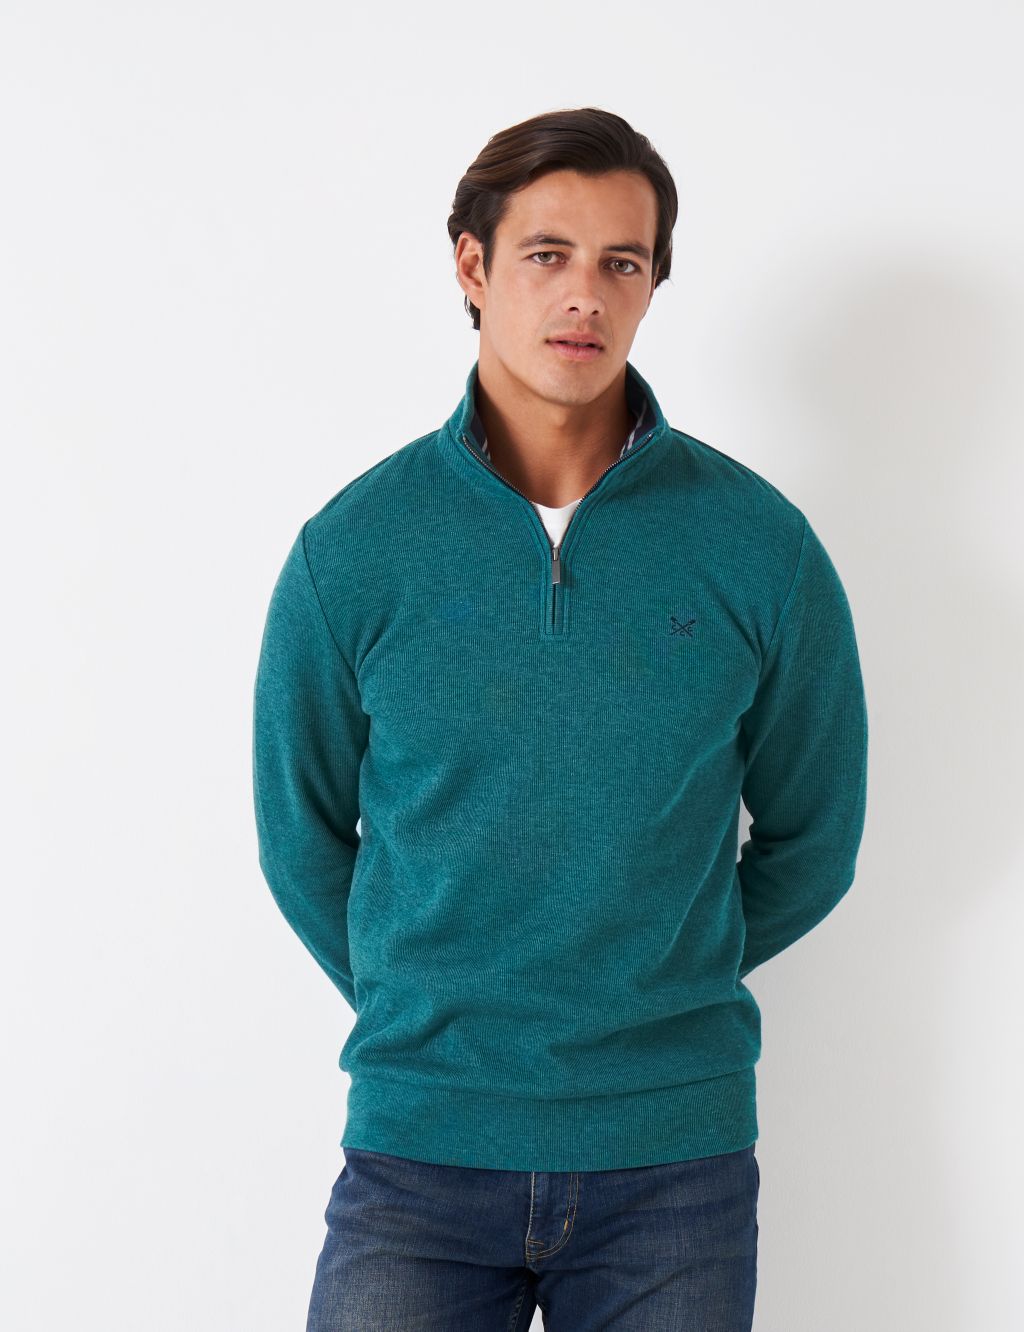 Men’s Half-Zip Sweatshirts & Hoodies | M&S